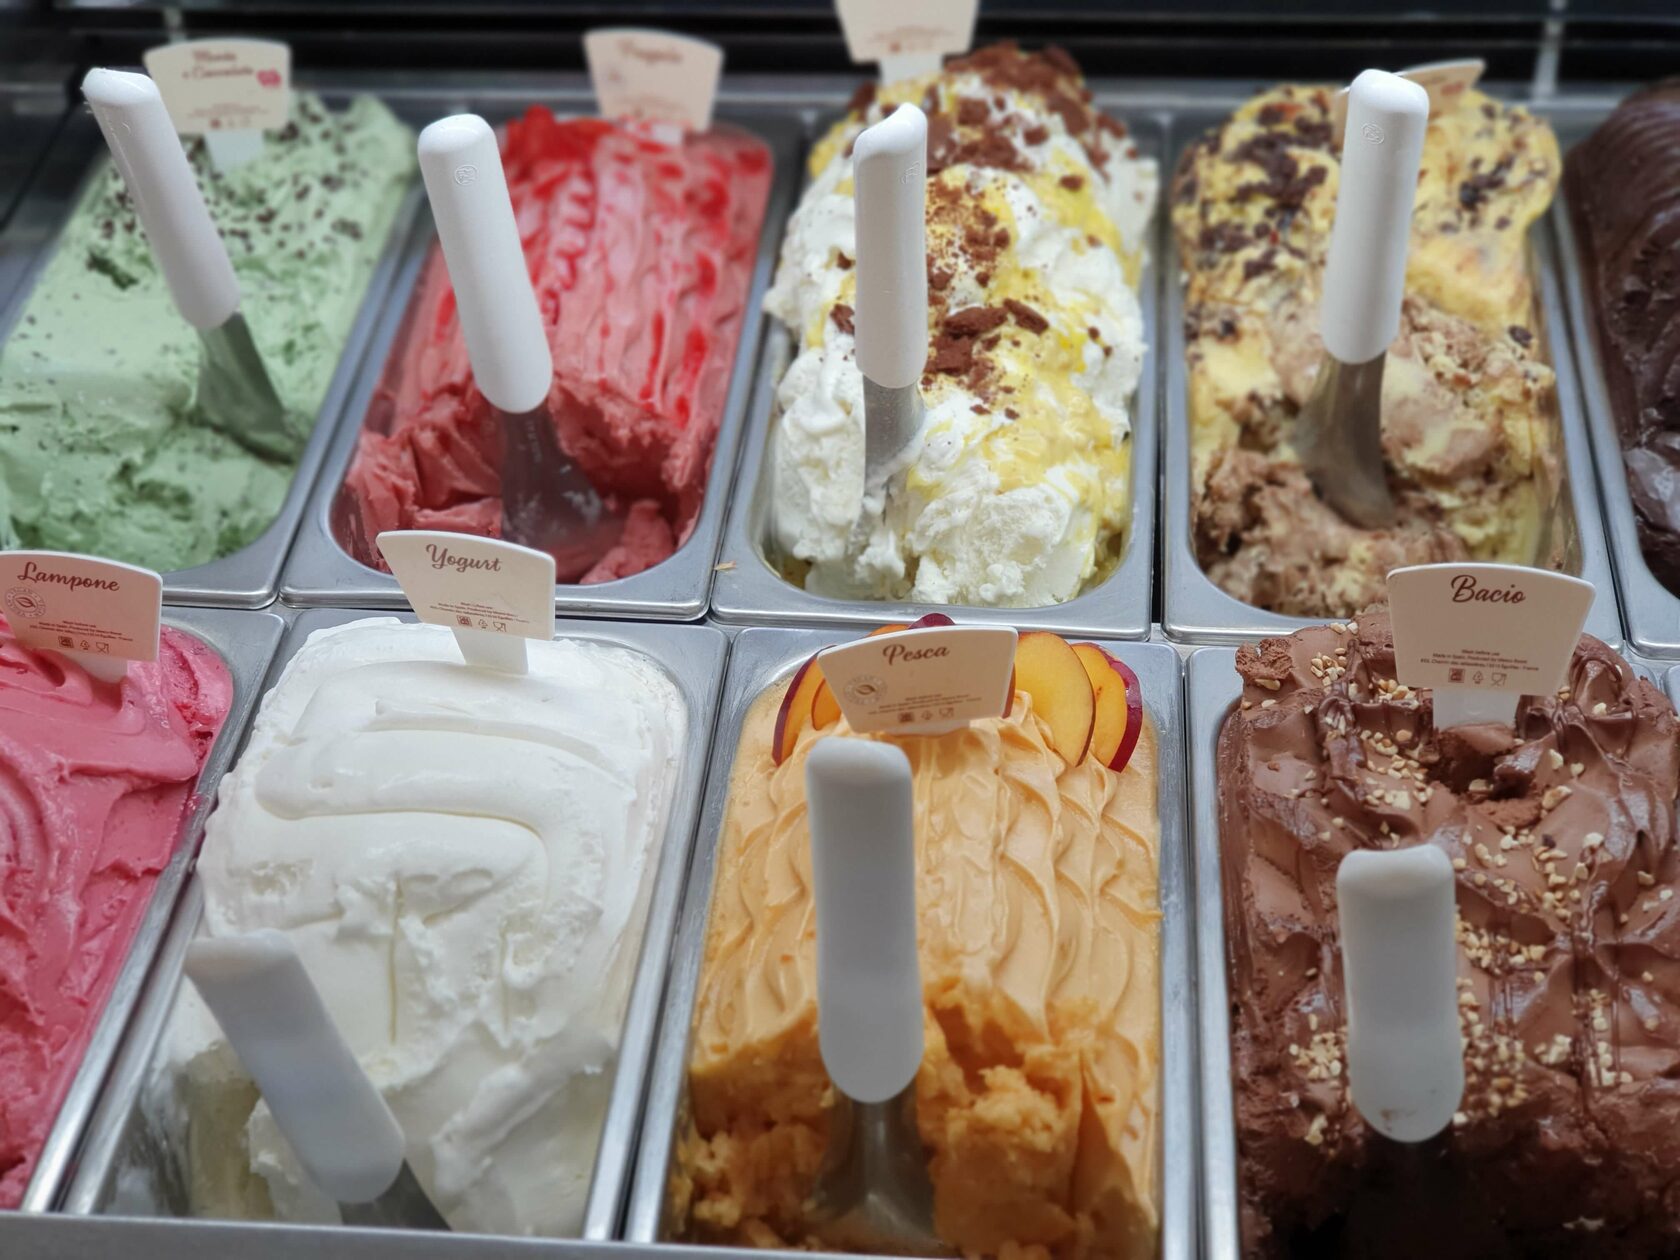 фестиваль мороженого в италии